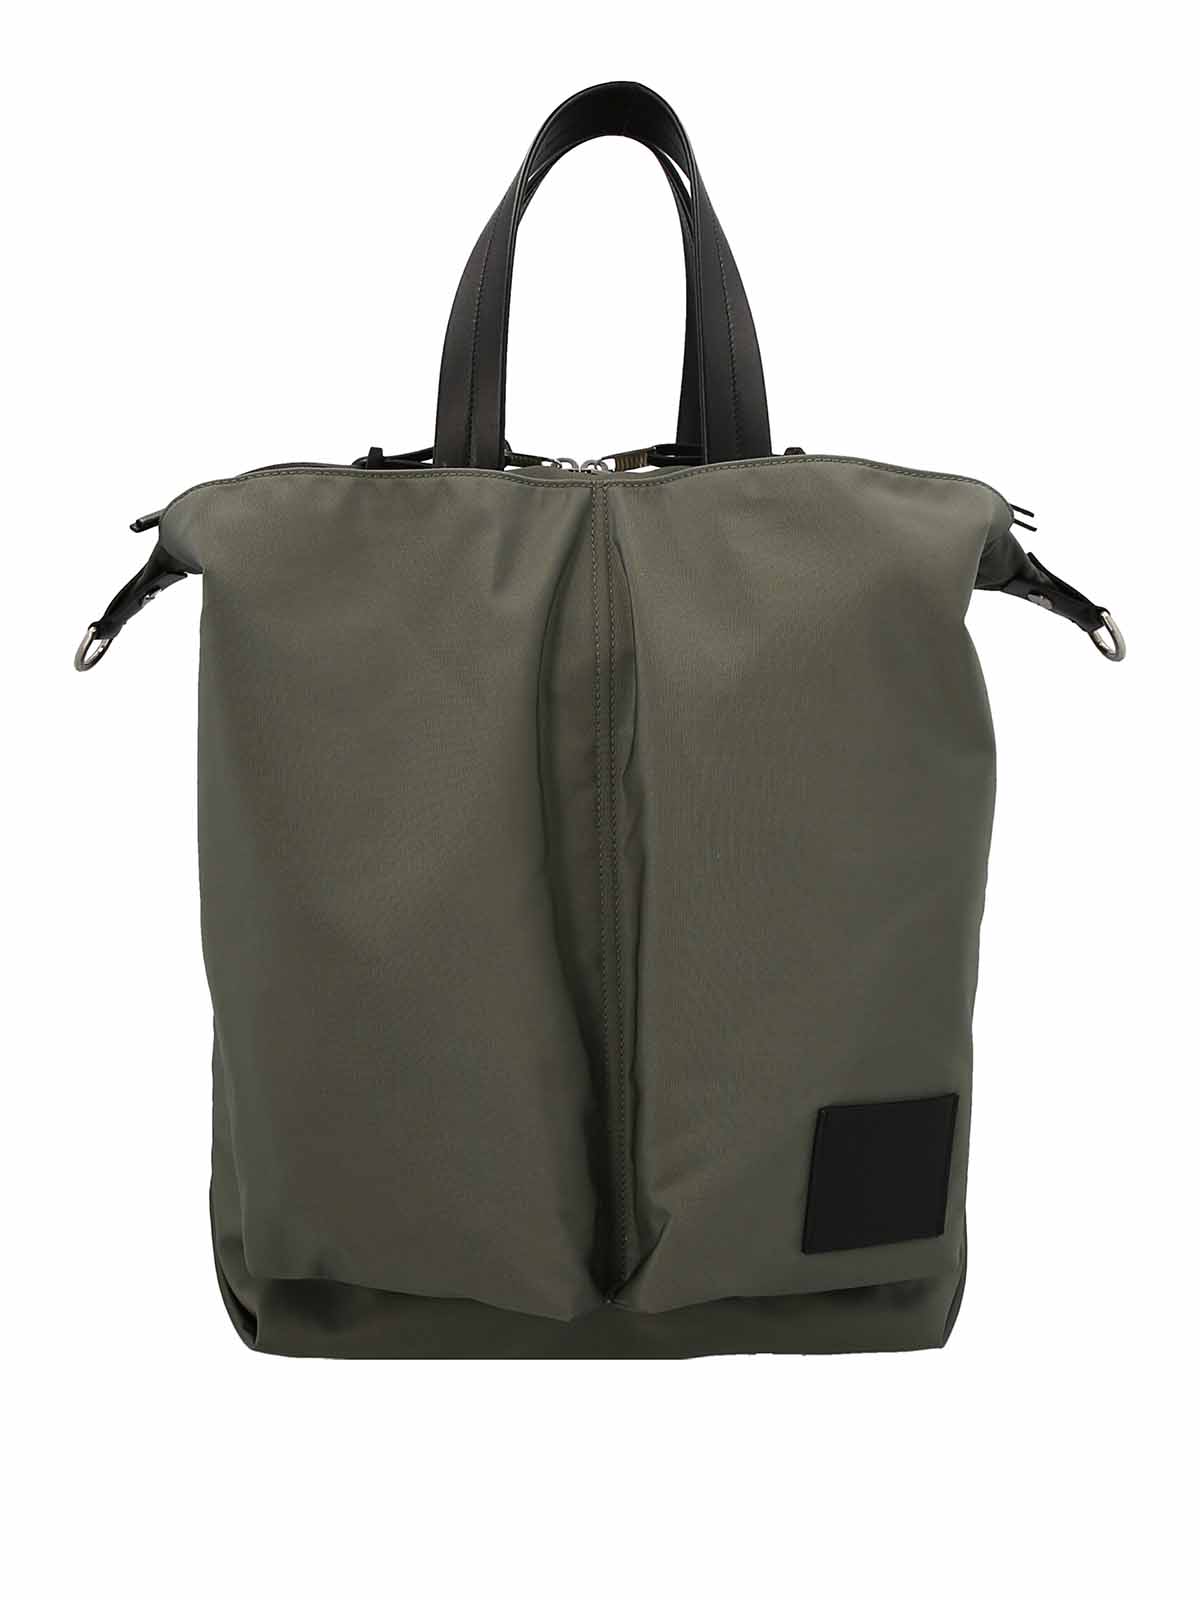 Totes bags Jil Sander - Logoed nylon tote - J25WD0002P4953303 | iKRIX.com